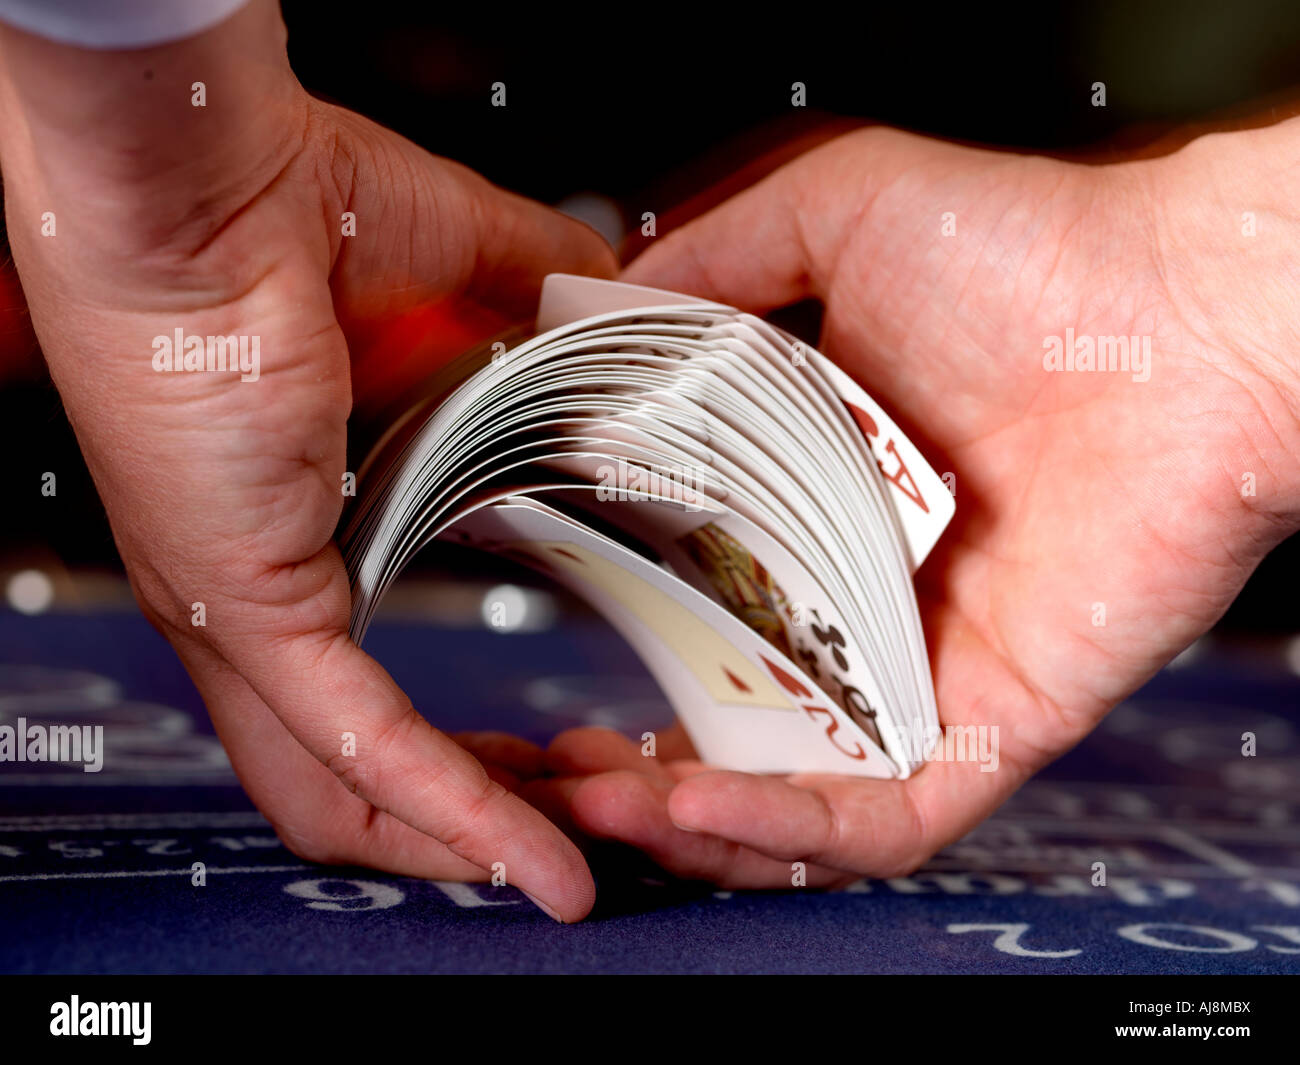 Crupier barajar cartas Fotografía de - Alamy